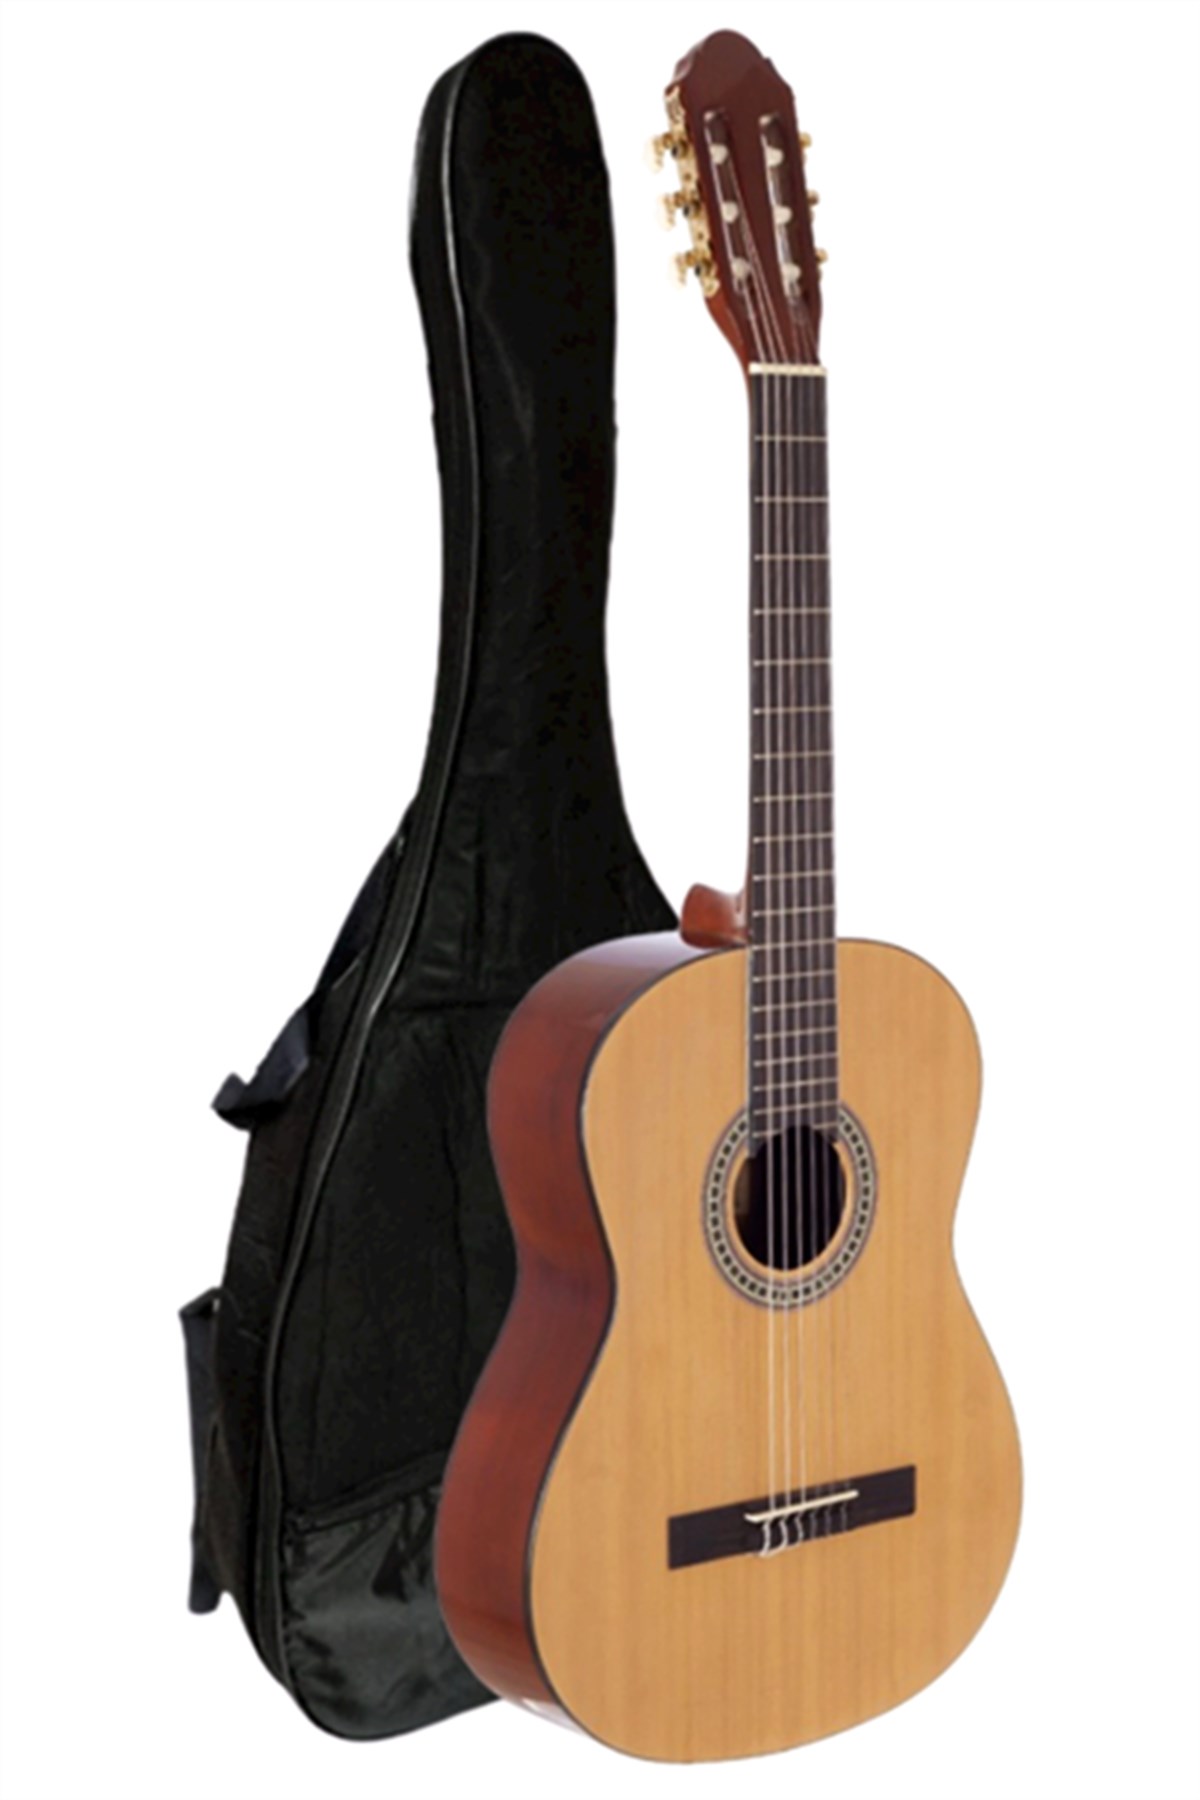 yas Devam eden Kocaman uygun fiyatlı klasik gitar - ncaeec.org